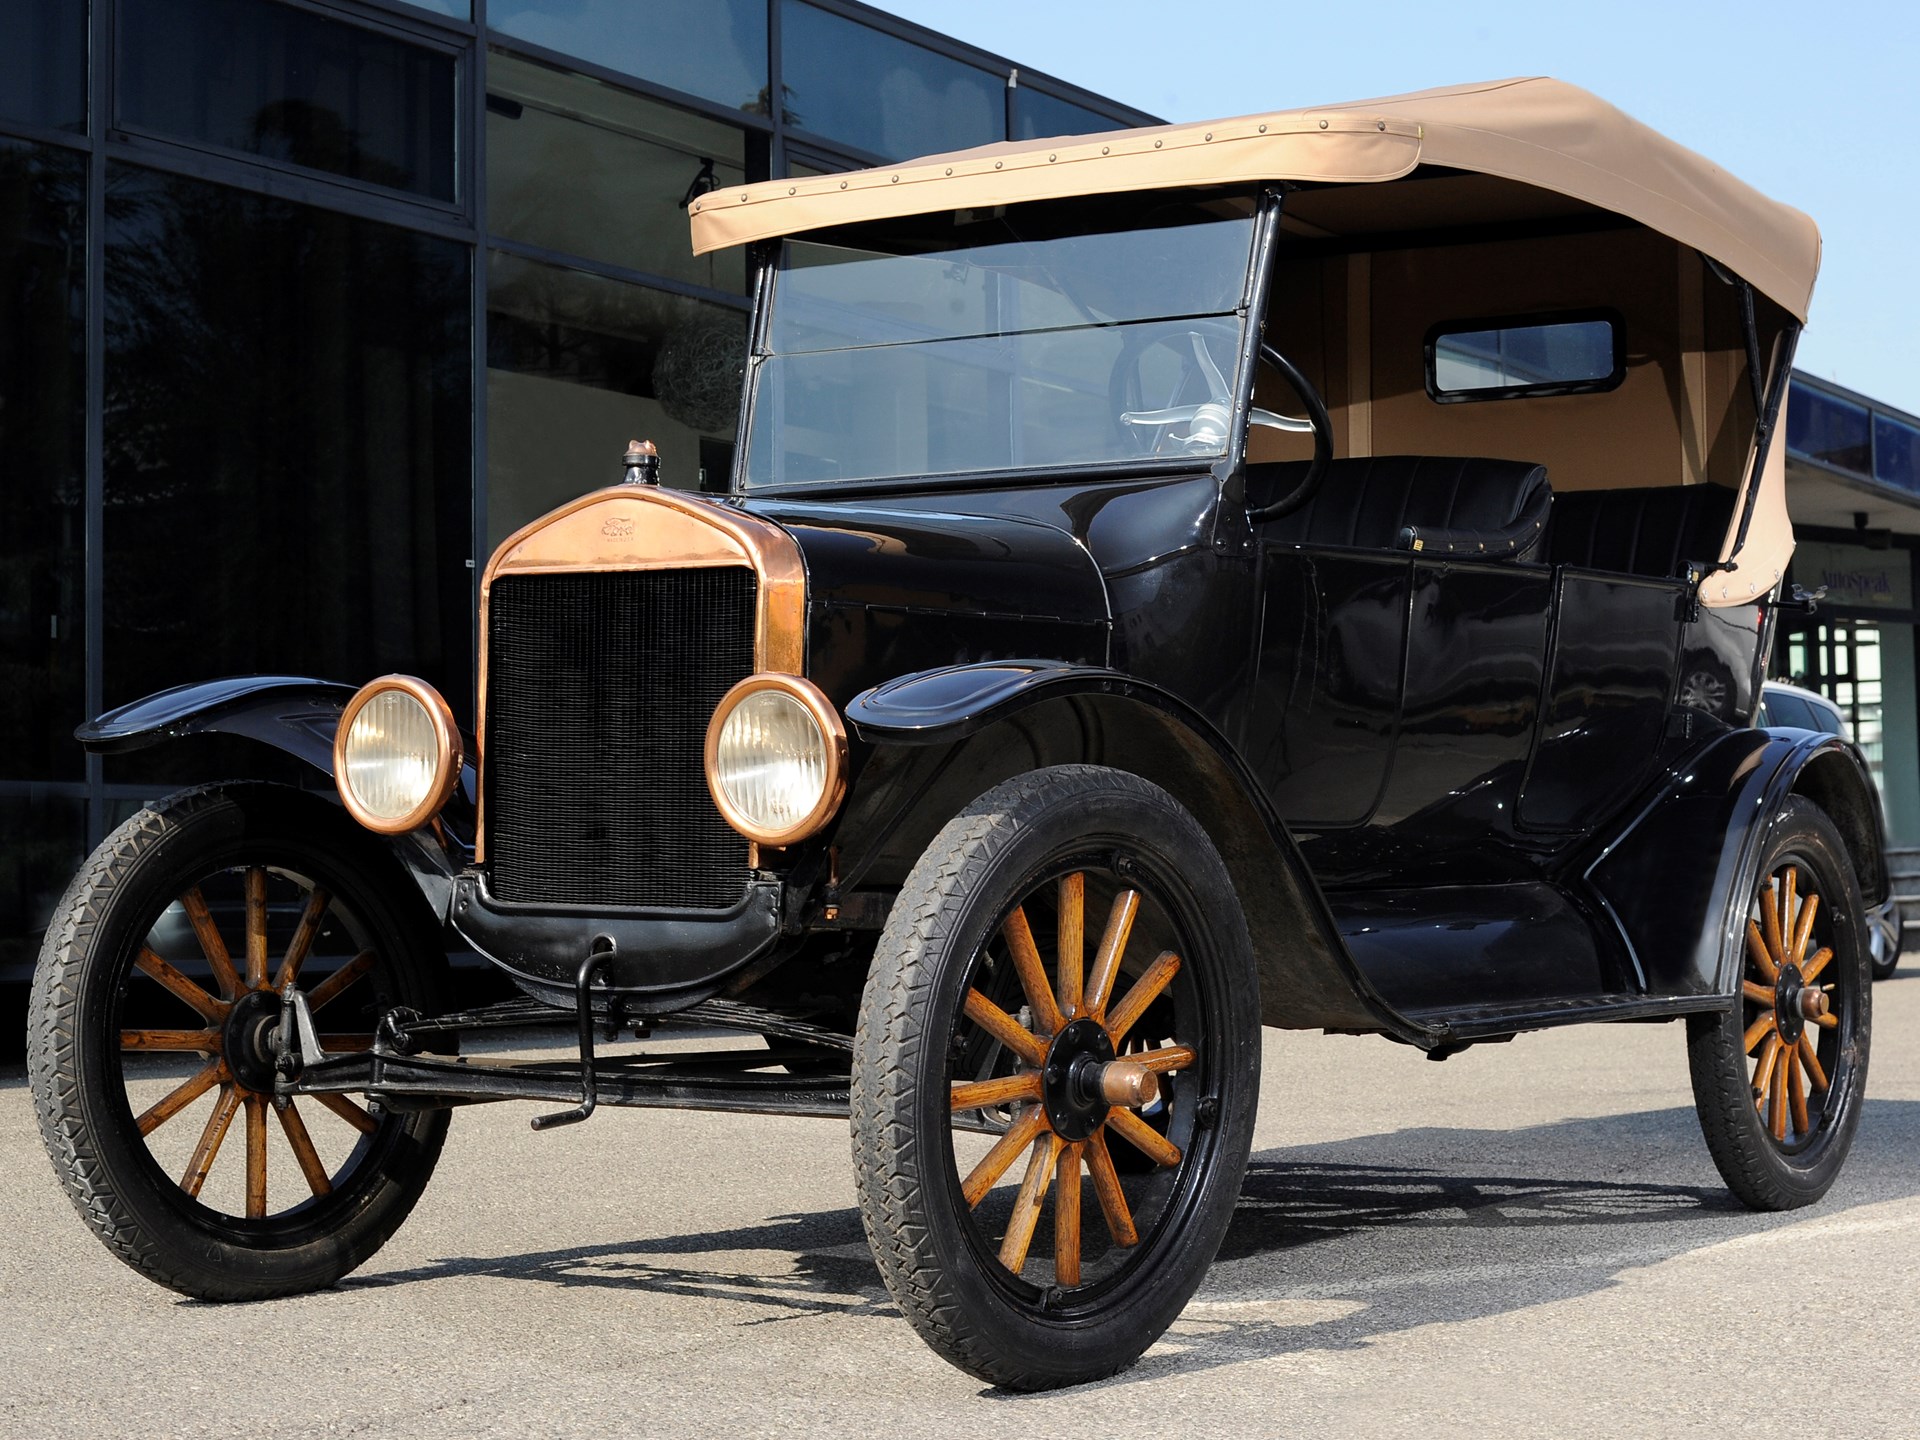 Первая машина форд. Ford model t 1923. Ford model t 1908 и 1927. Форд модель т 1908 Лиззи.